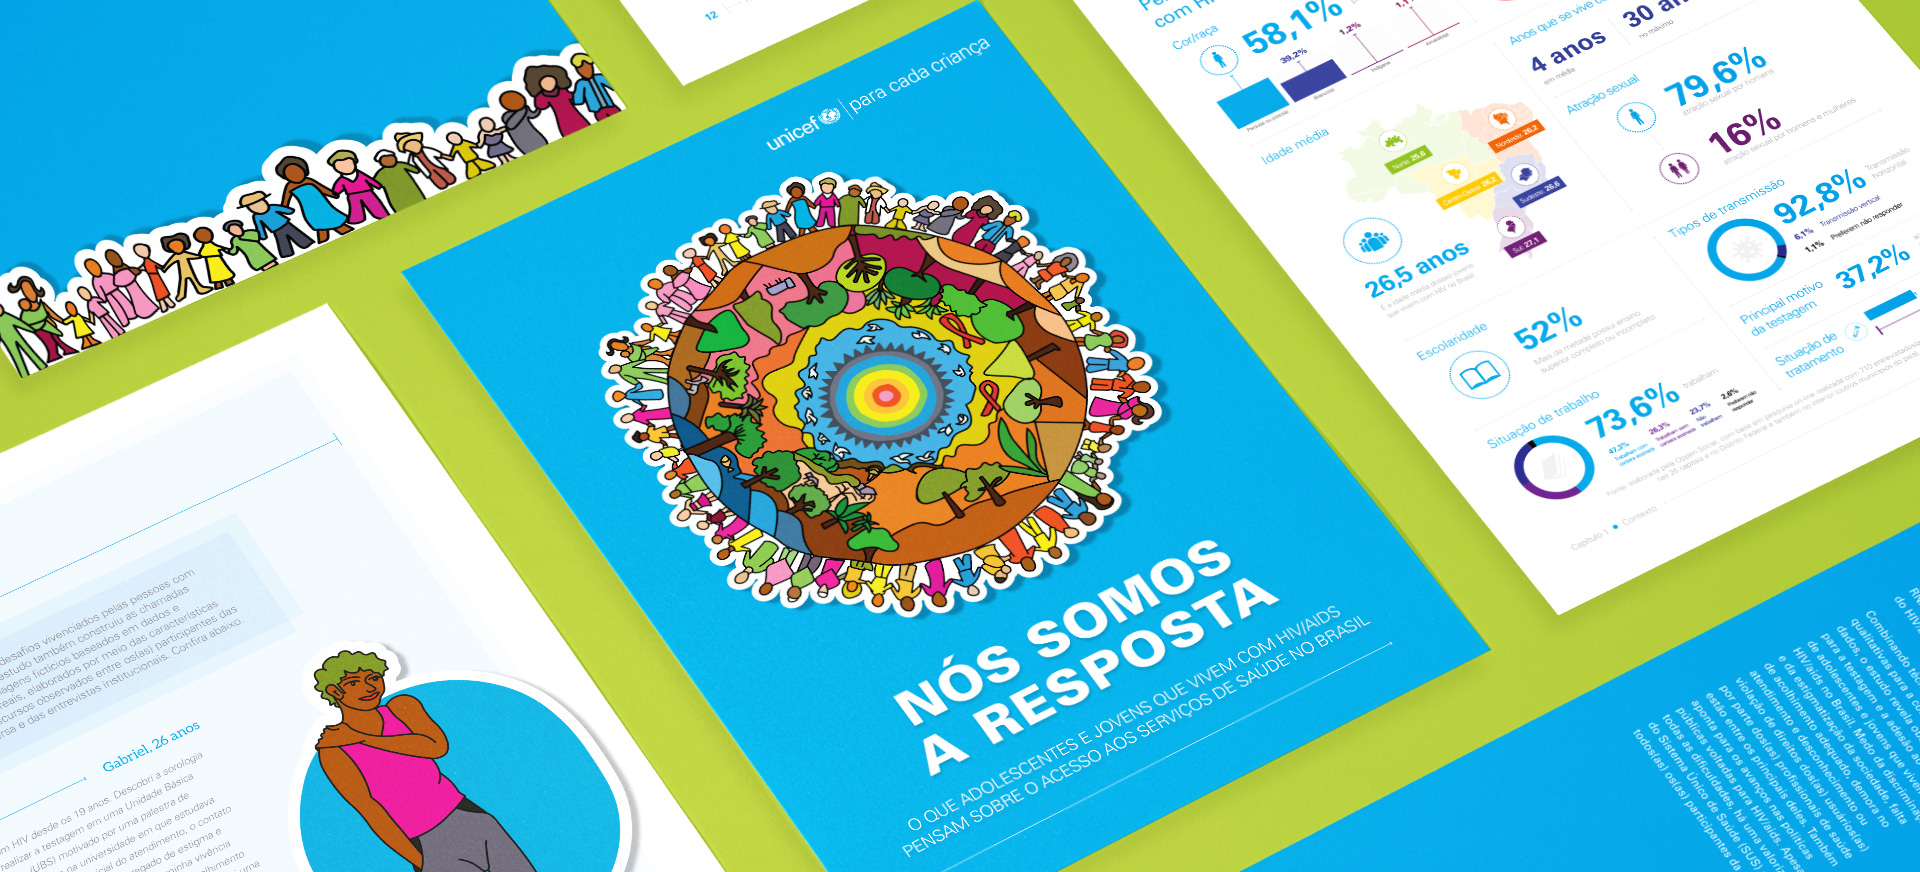 Unicef lança livro no Dia Mundial da Luta contra a aids